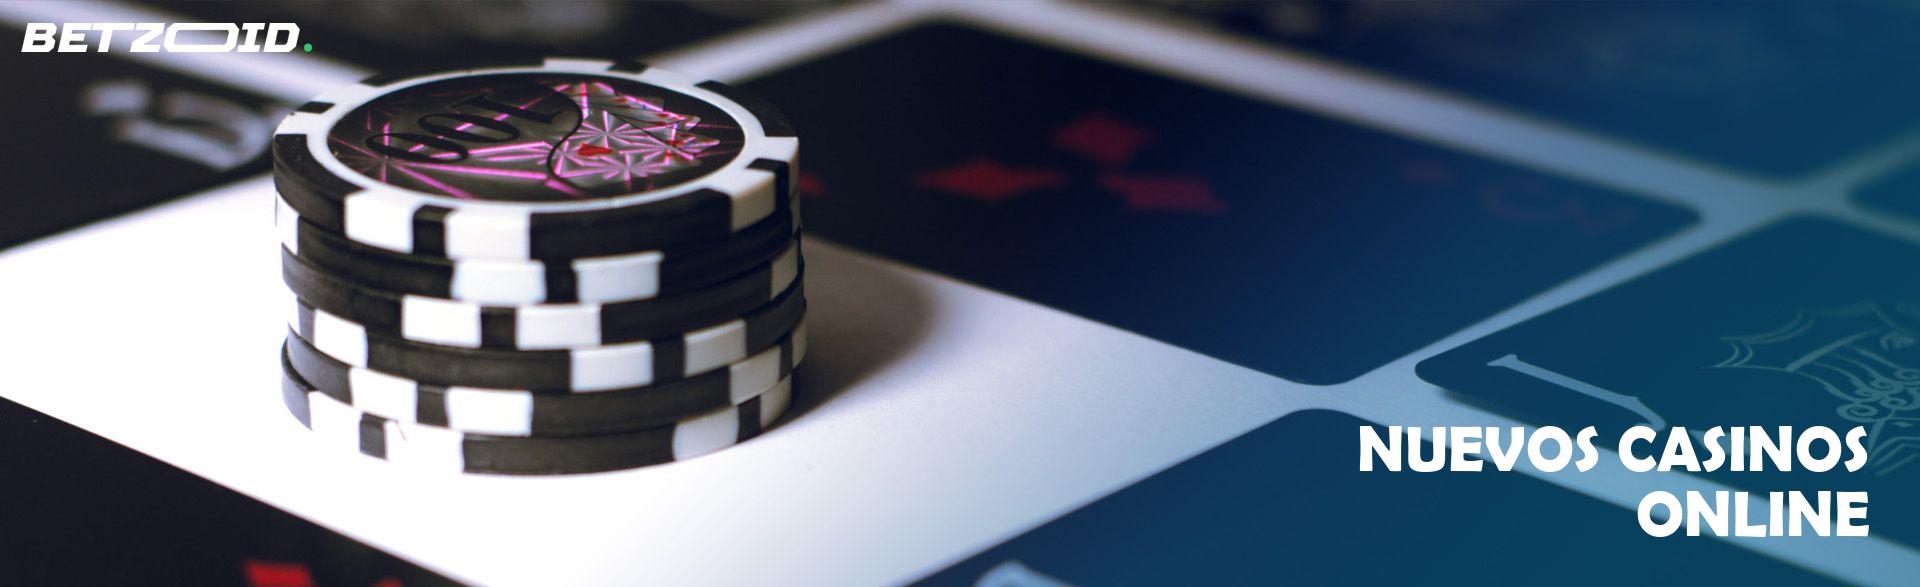 casinos online - ¿Cómo ser más productivo?